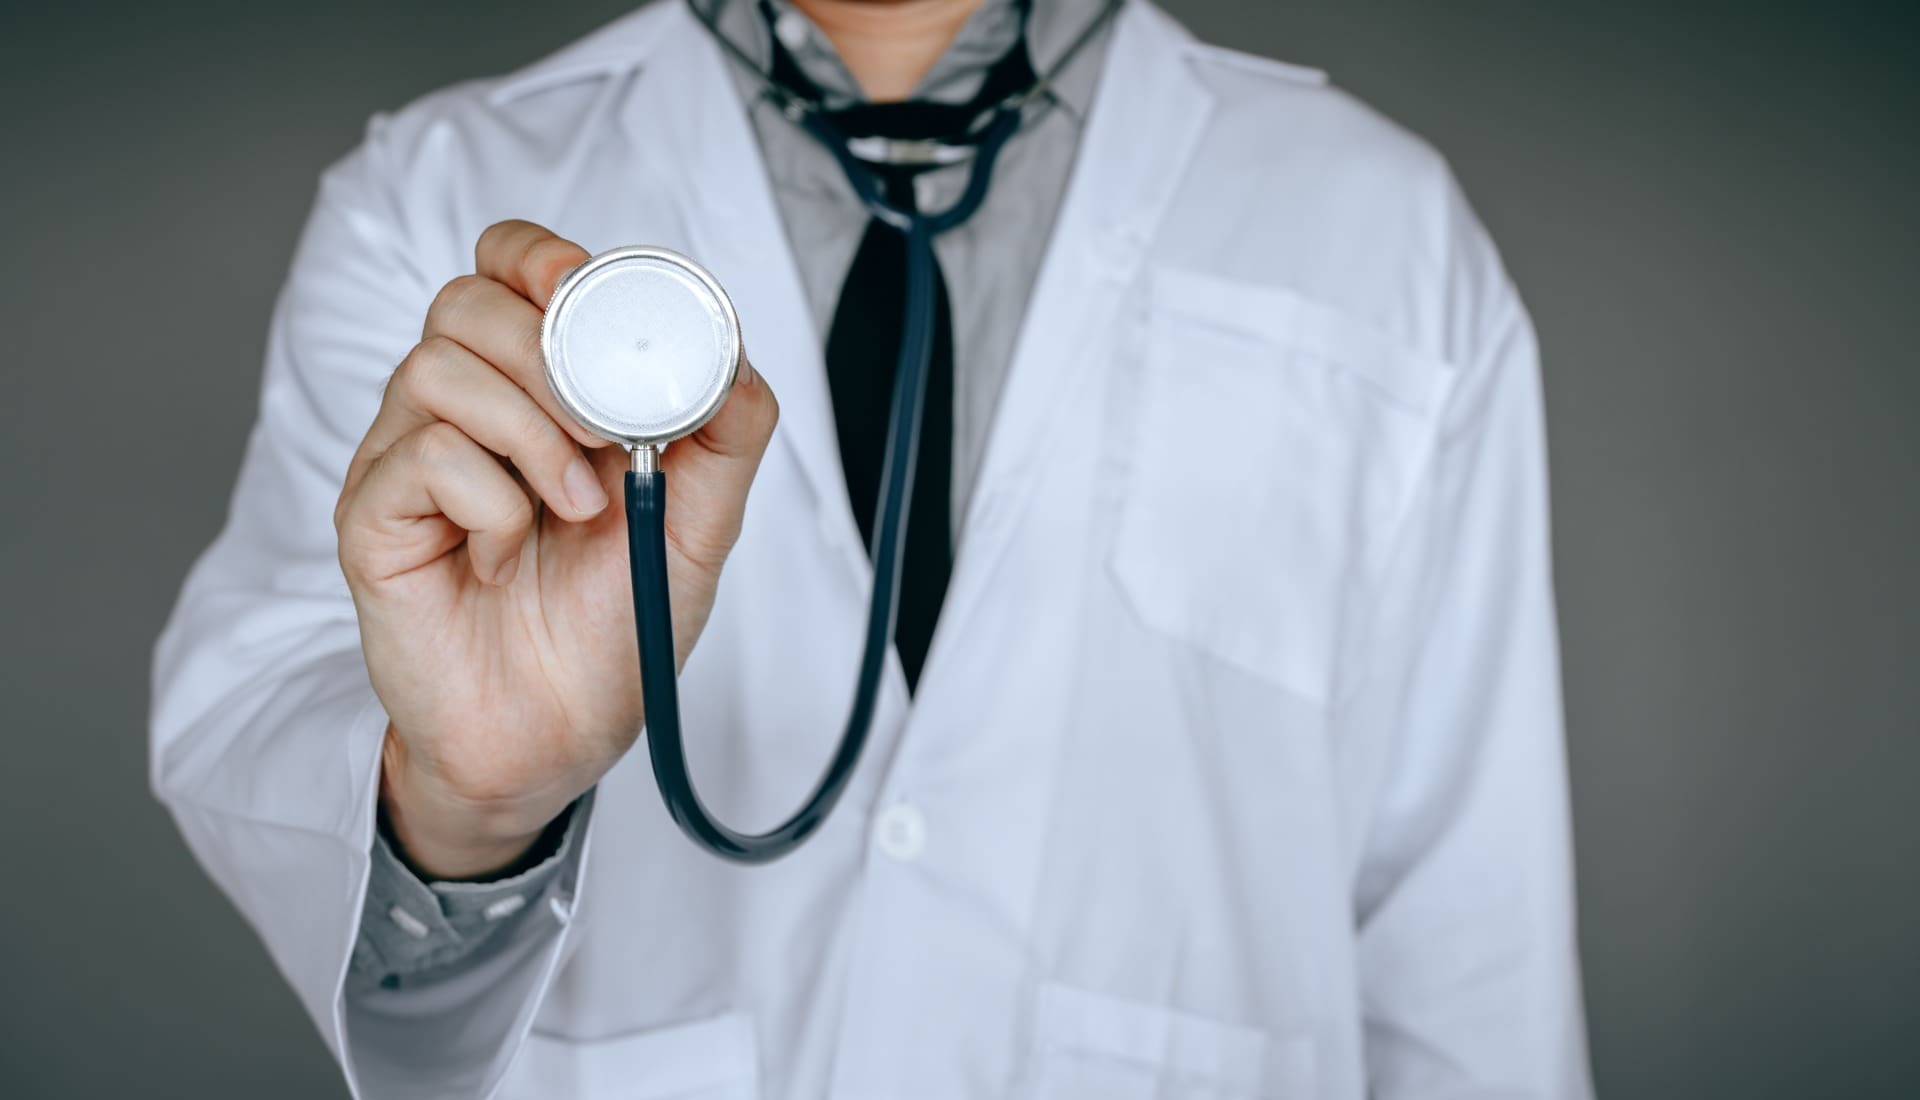 ministerio propoe suplemento de 500 euros mensais para medicos que fazem urgencias